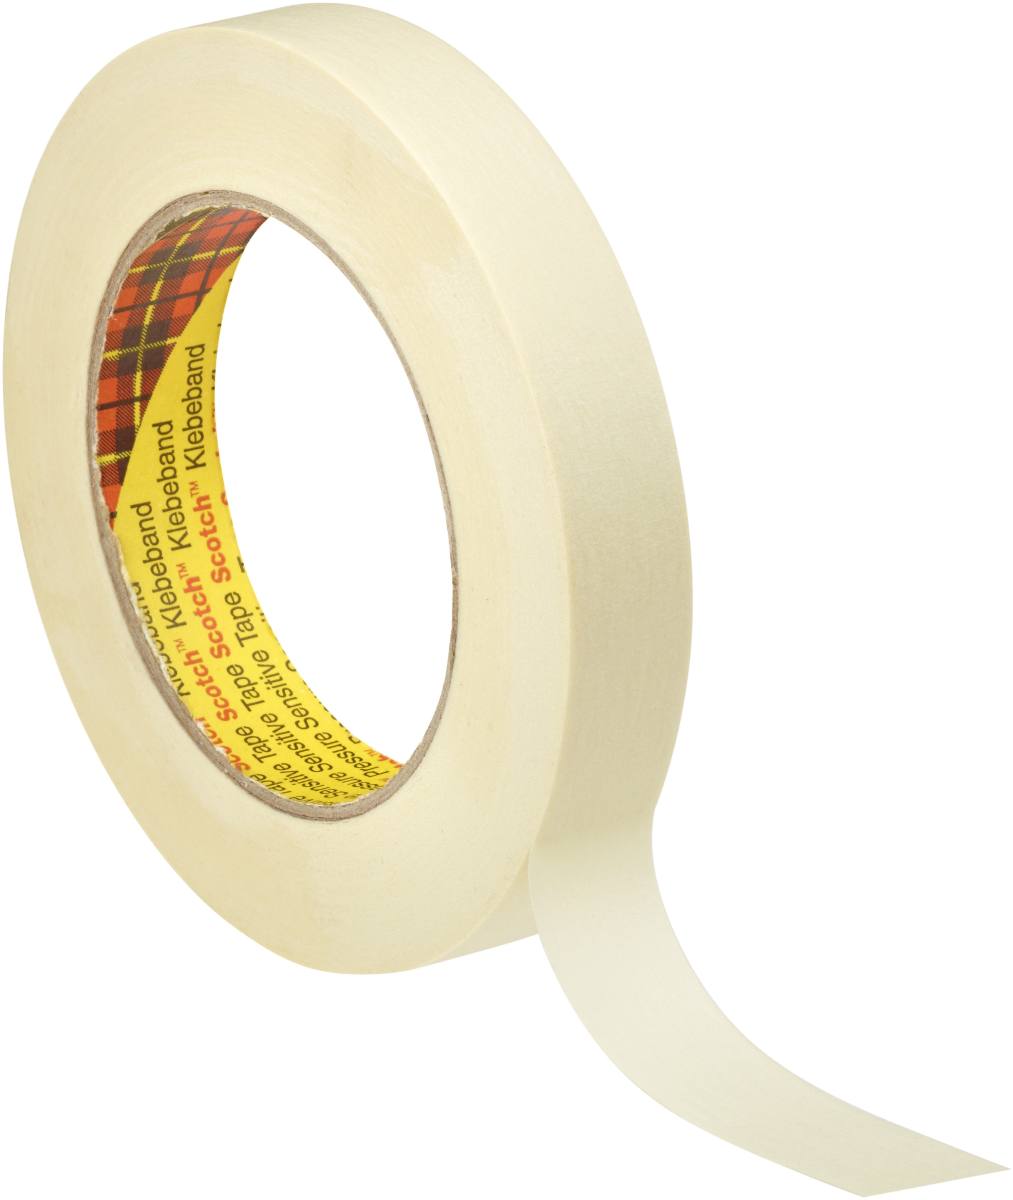 3M Scotch masking tape P3630, 30 mm x 50 m